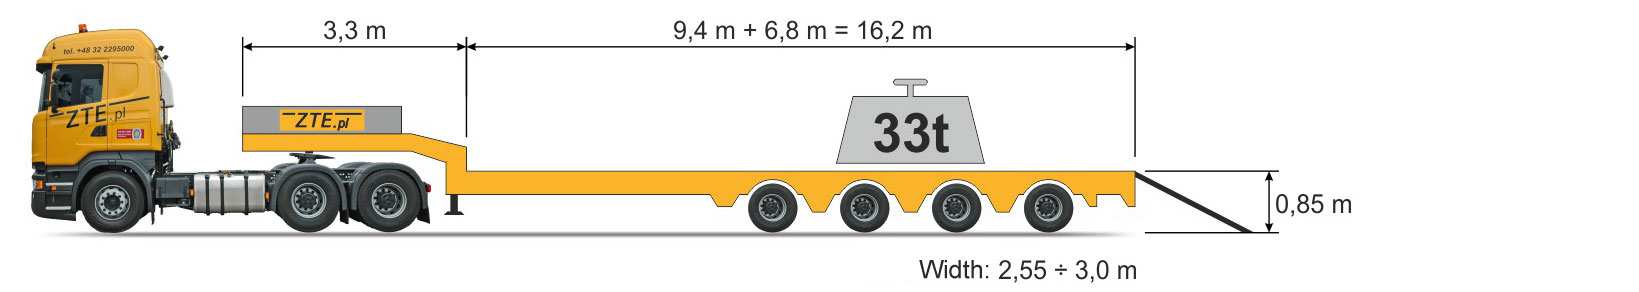 4-axle Semi semi-trailer